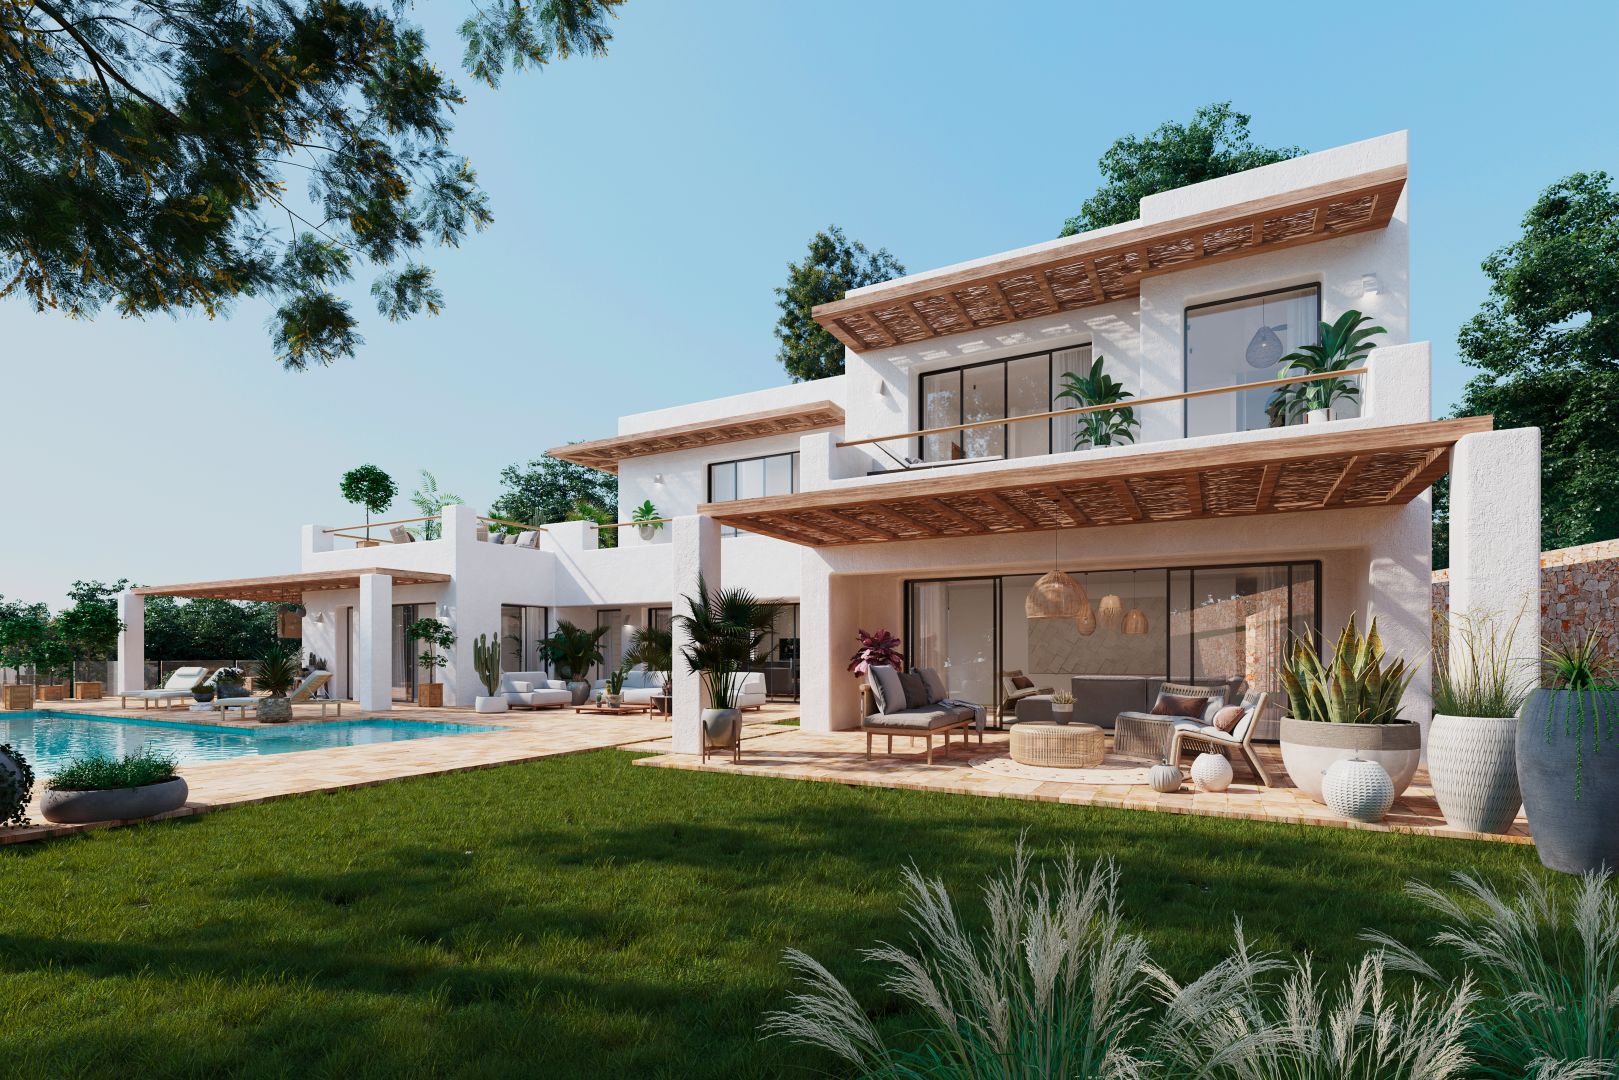 Luxe wonen onthuld: weelderige mediterrane villa met spectaculair uitzicht